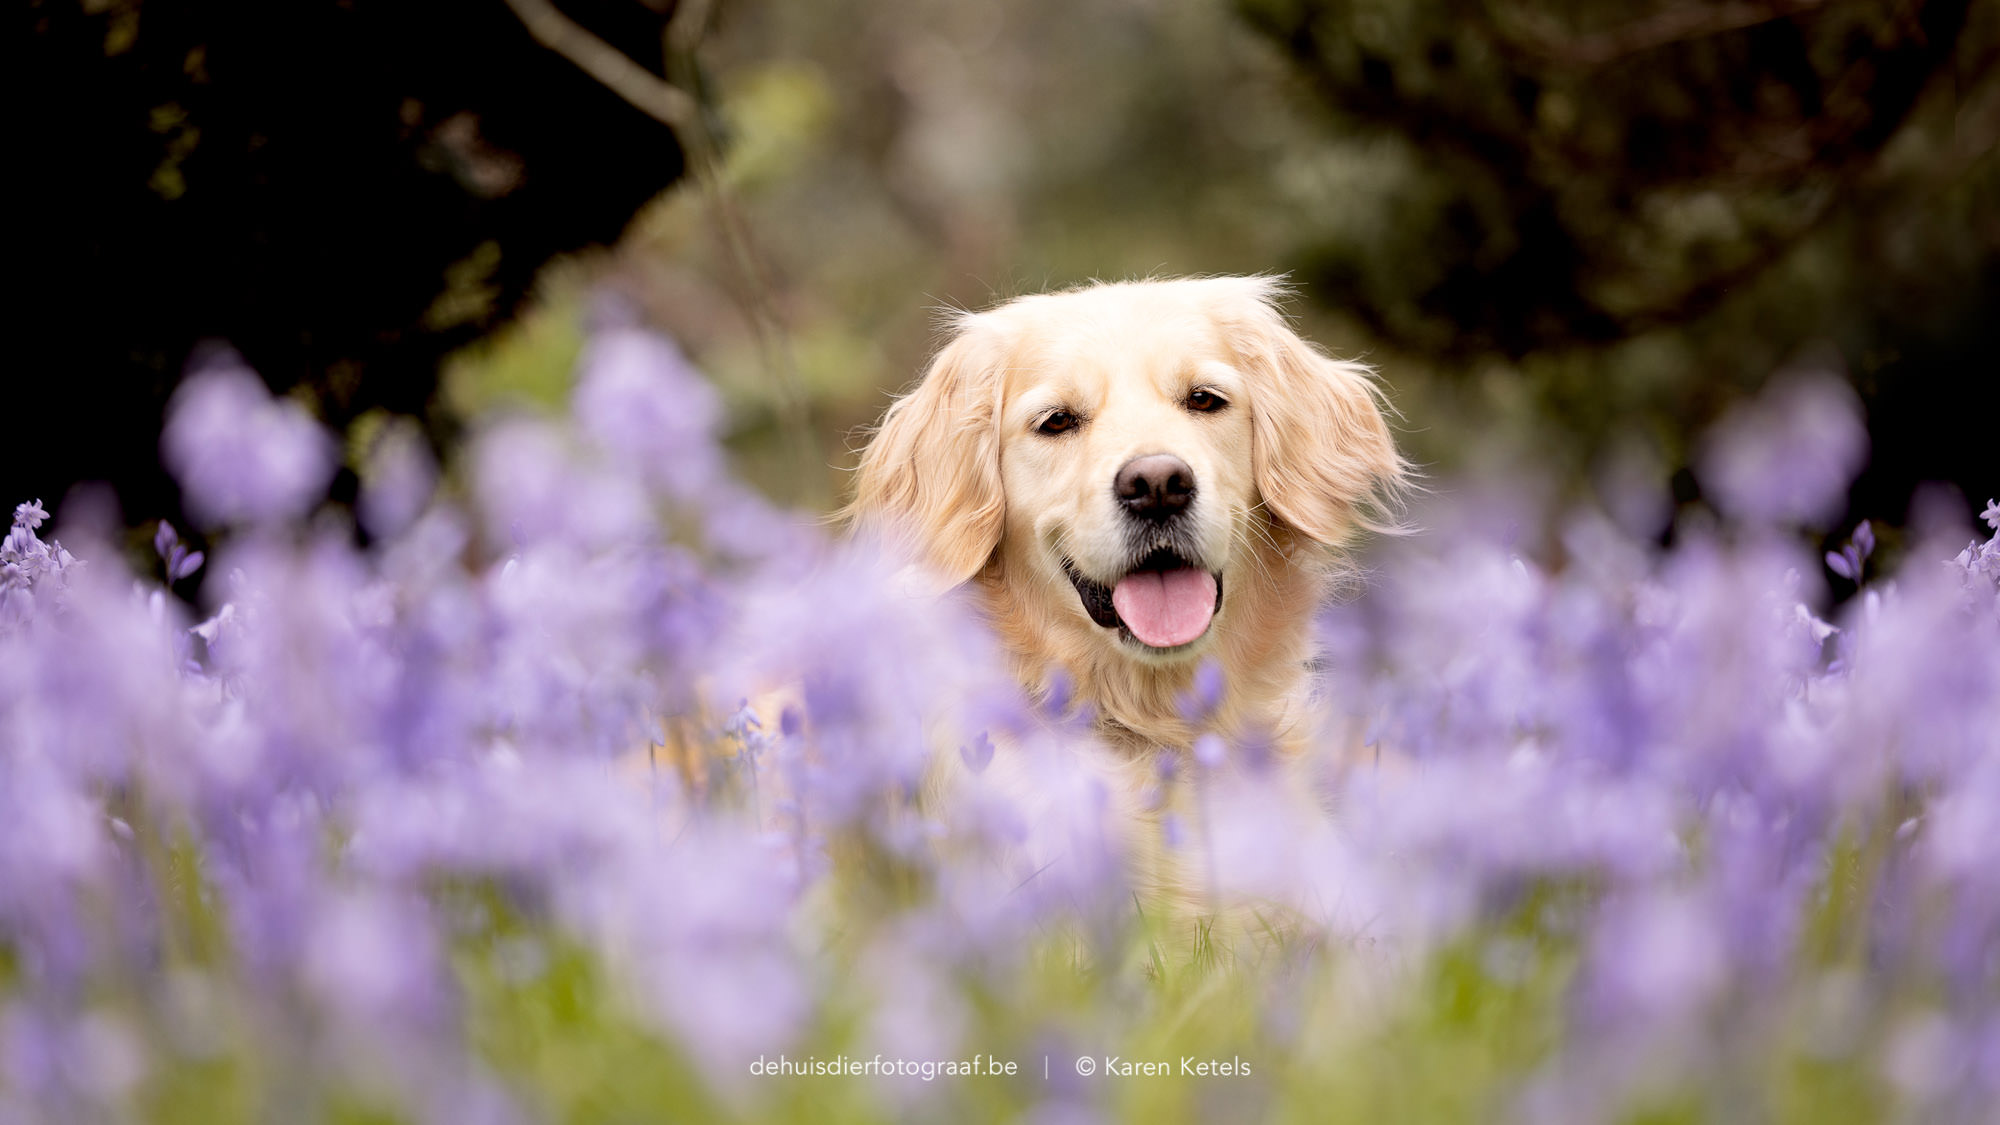 Portret van een vrolijke golden retriever tussen de blauwe bloementjes. Portret door De Huisdierfotograaf